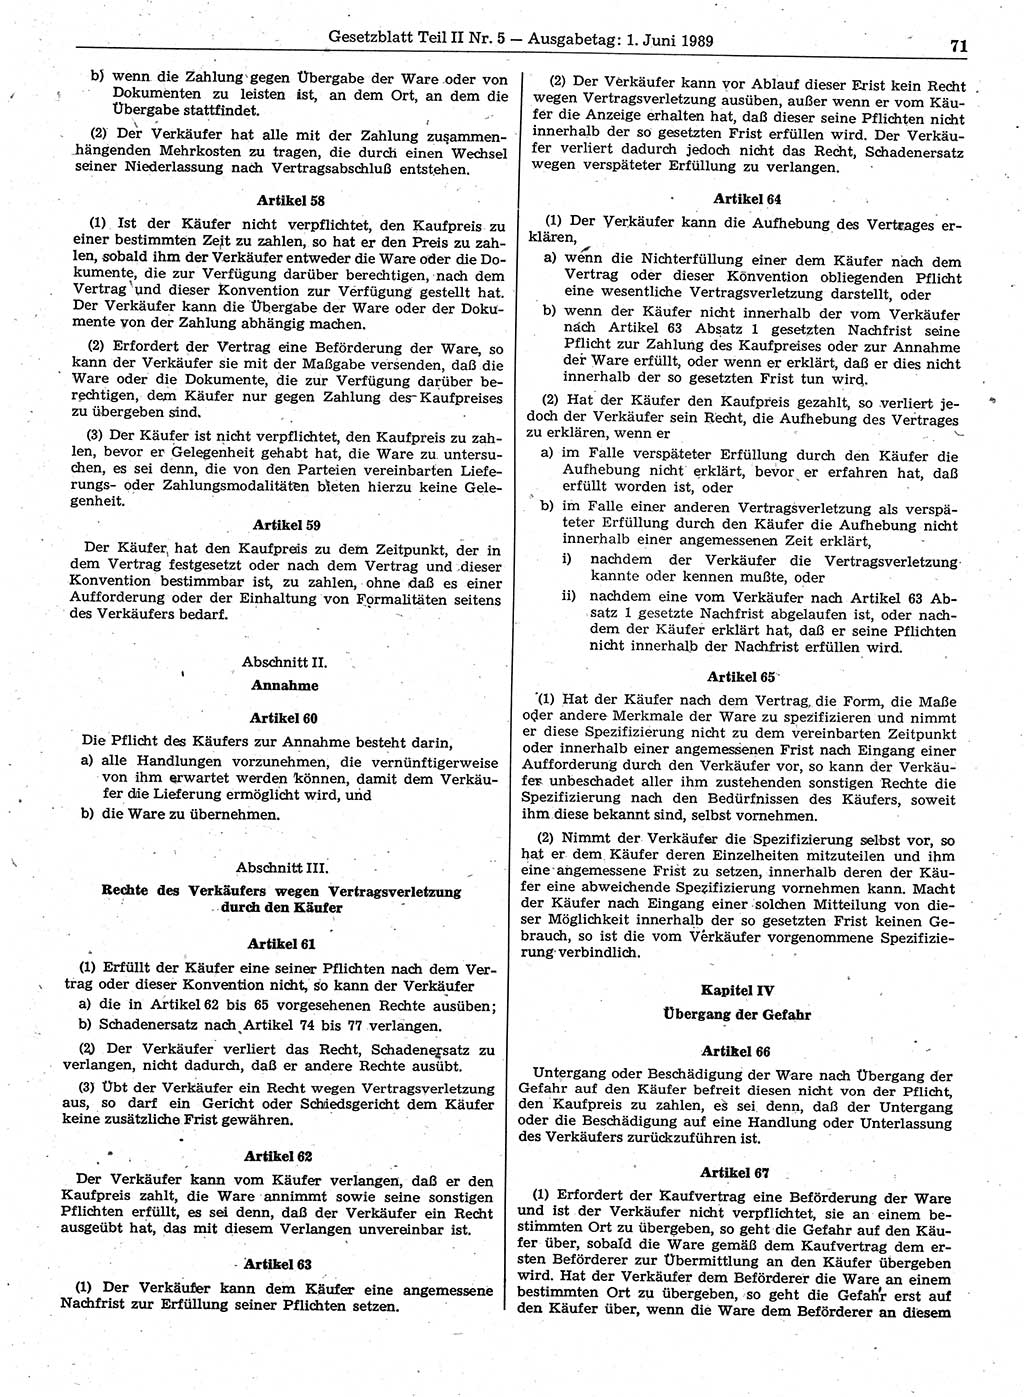 Gesetzblatt (GBl.) der Deutschen Demokratischen Republik (DDR) Teil ⅠⅠ 1989, Seite 71 (GBl. DDR ⅠⅠ 1989, S. 71)